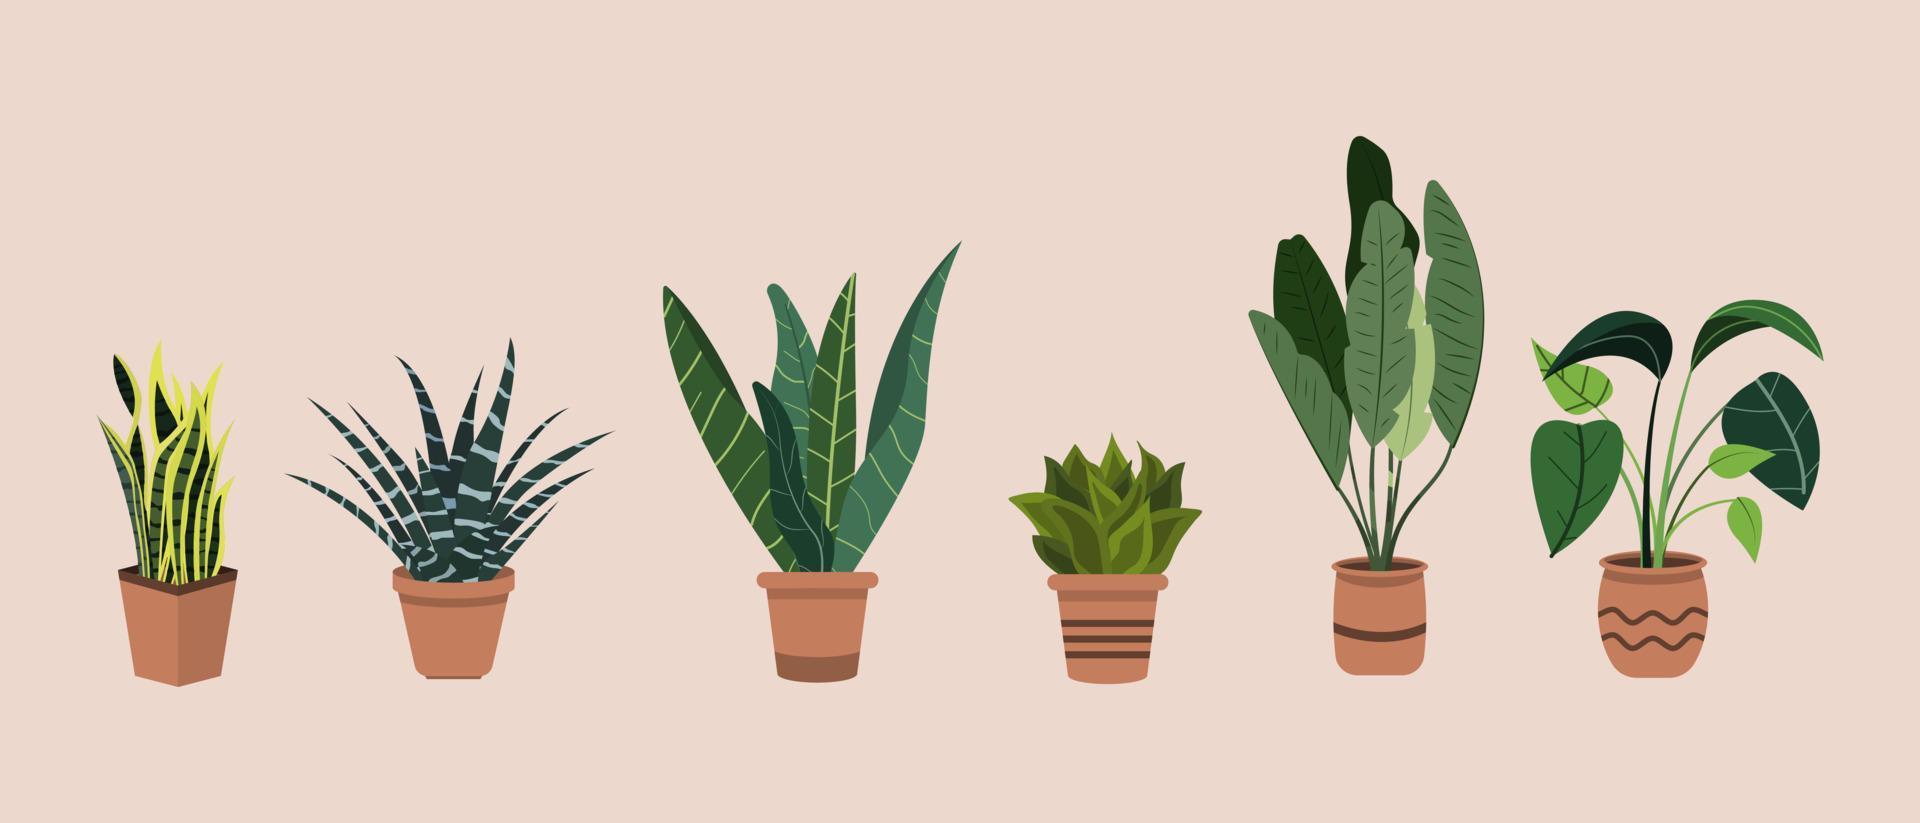 grupo de plantas de interior en macetas planas dibujadas a mano ilustración vector